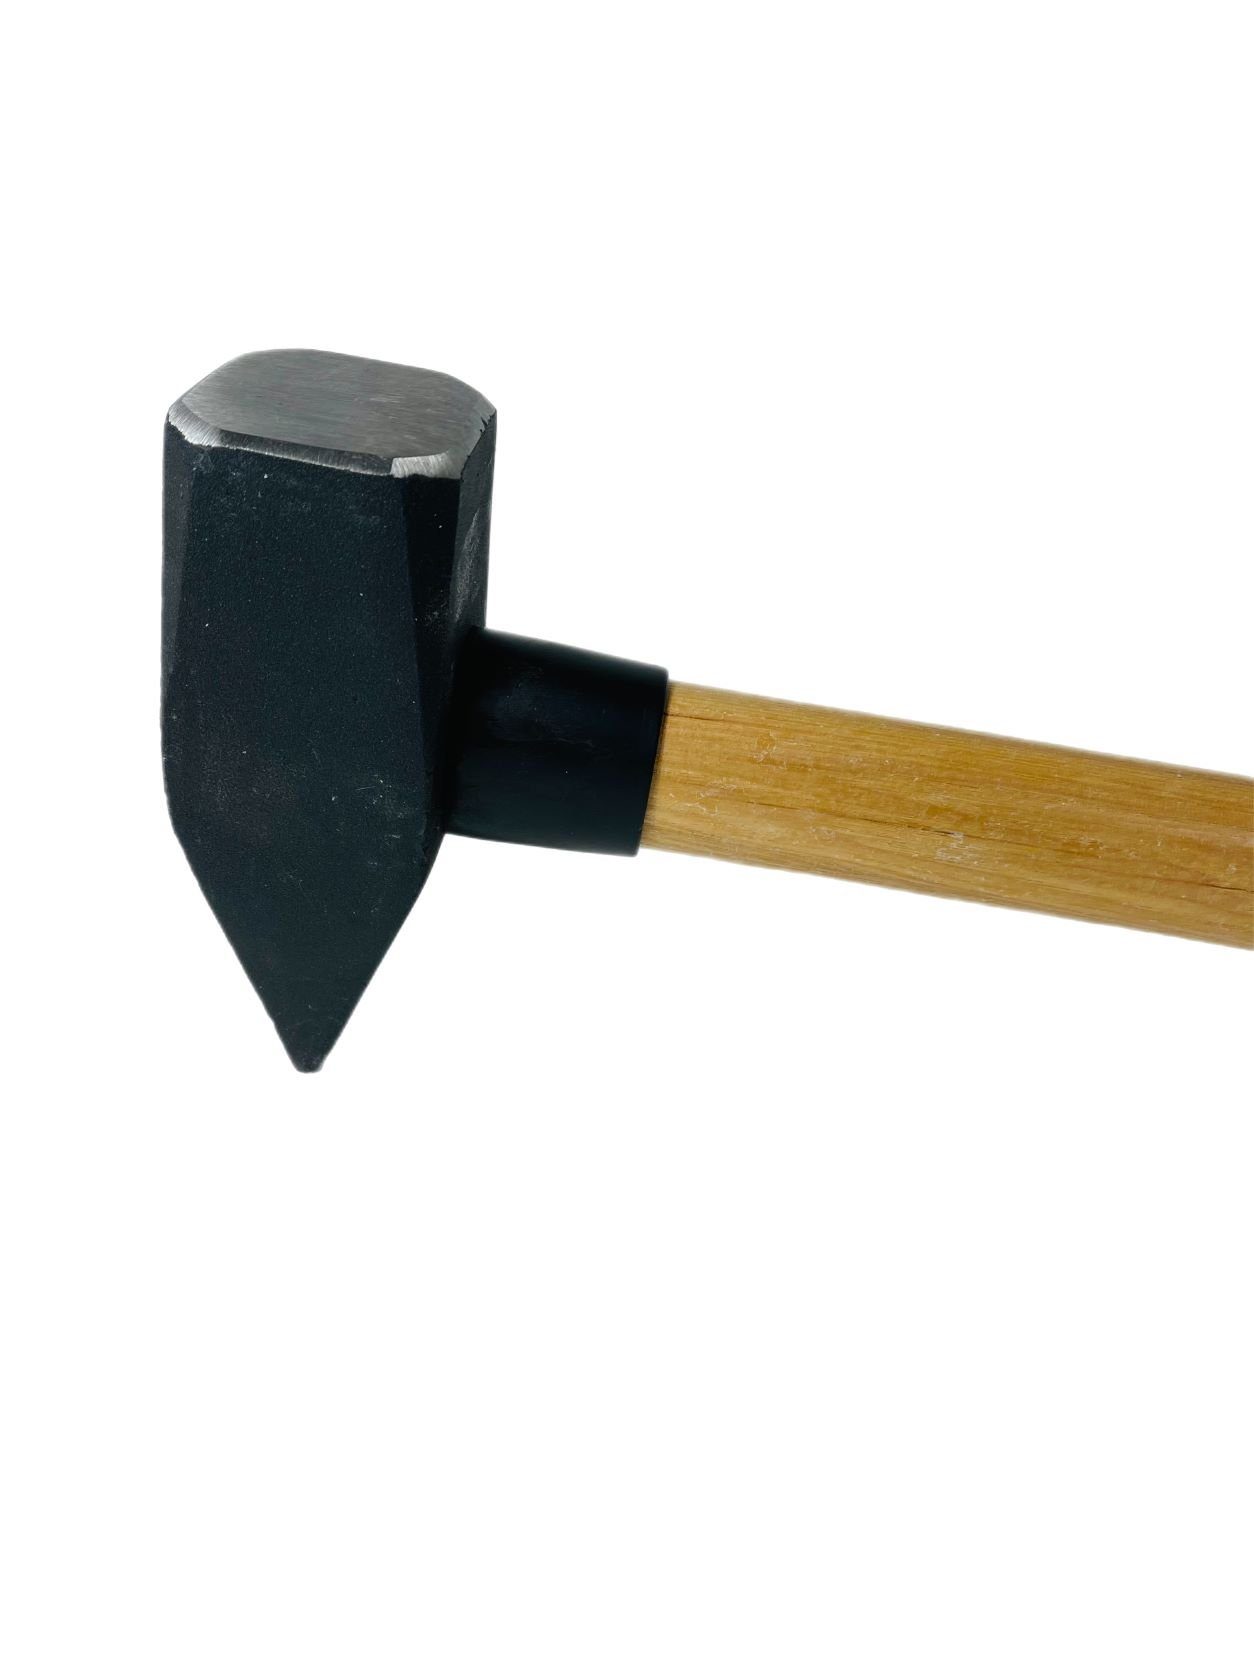 Hammer Hammer Hickorystiel Hämmer VaGo-Tools Schlosserhammer 4kg